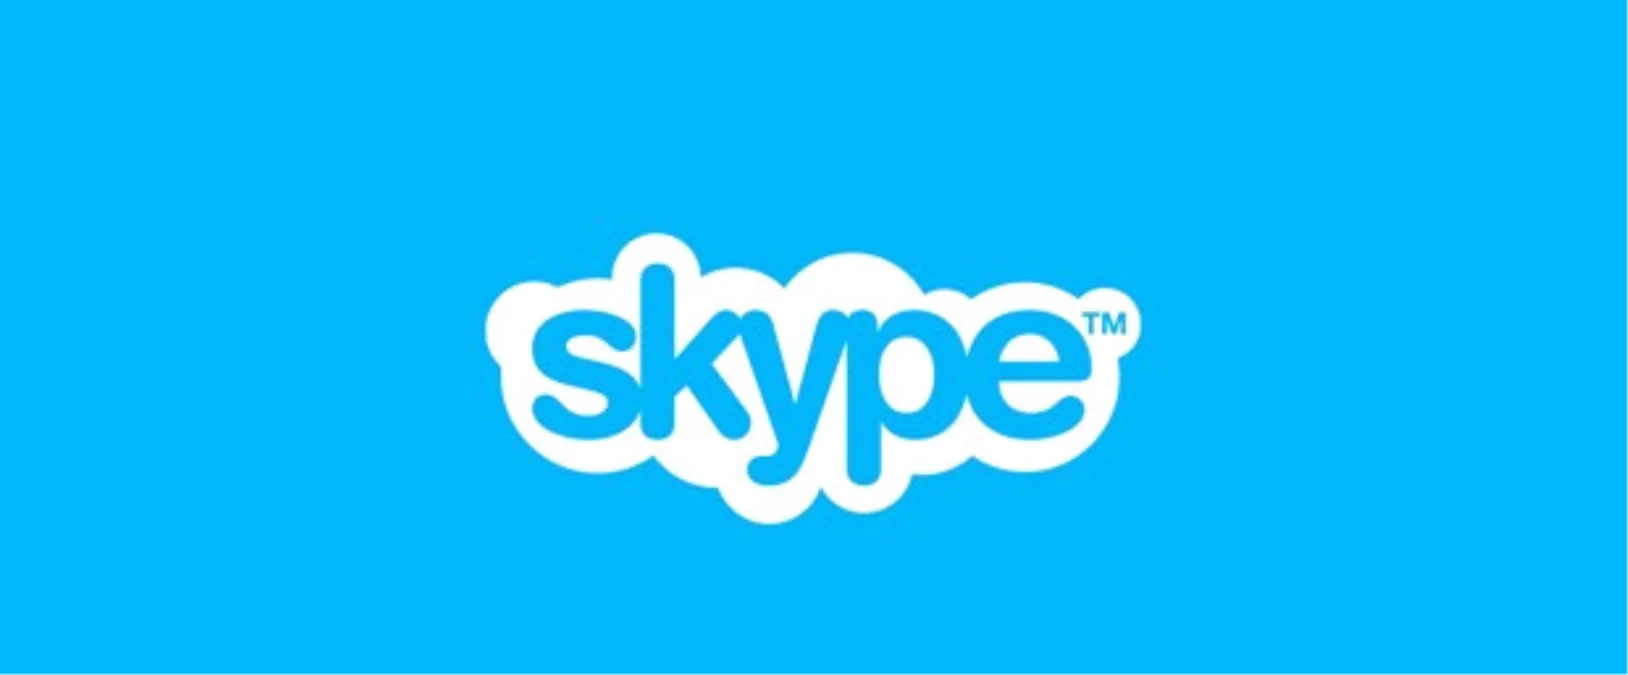 İletişim Uygulaması Skype Yenilendi